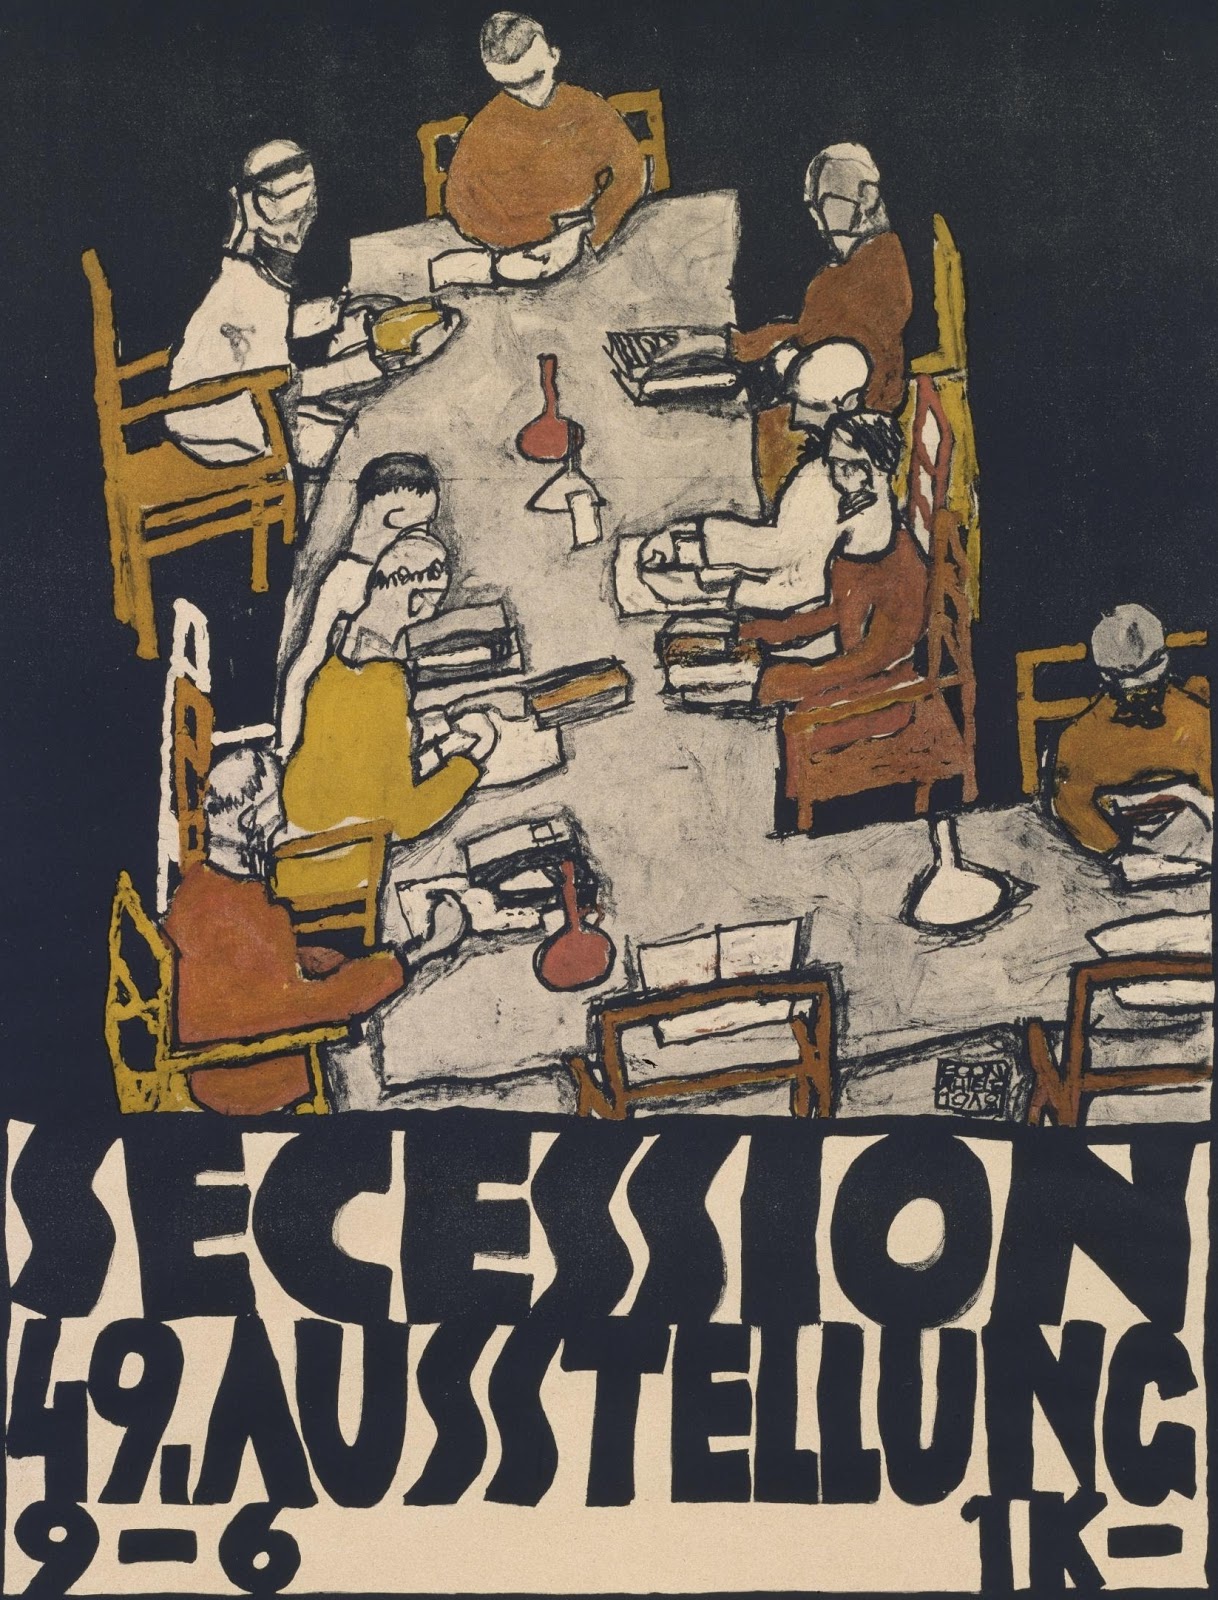 Egon+Schiele-1890-1918 (68).jpg